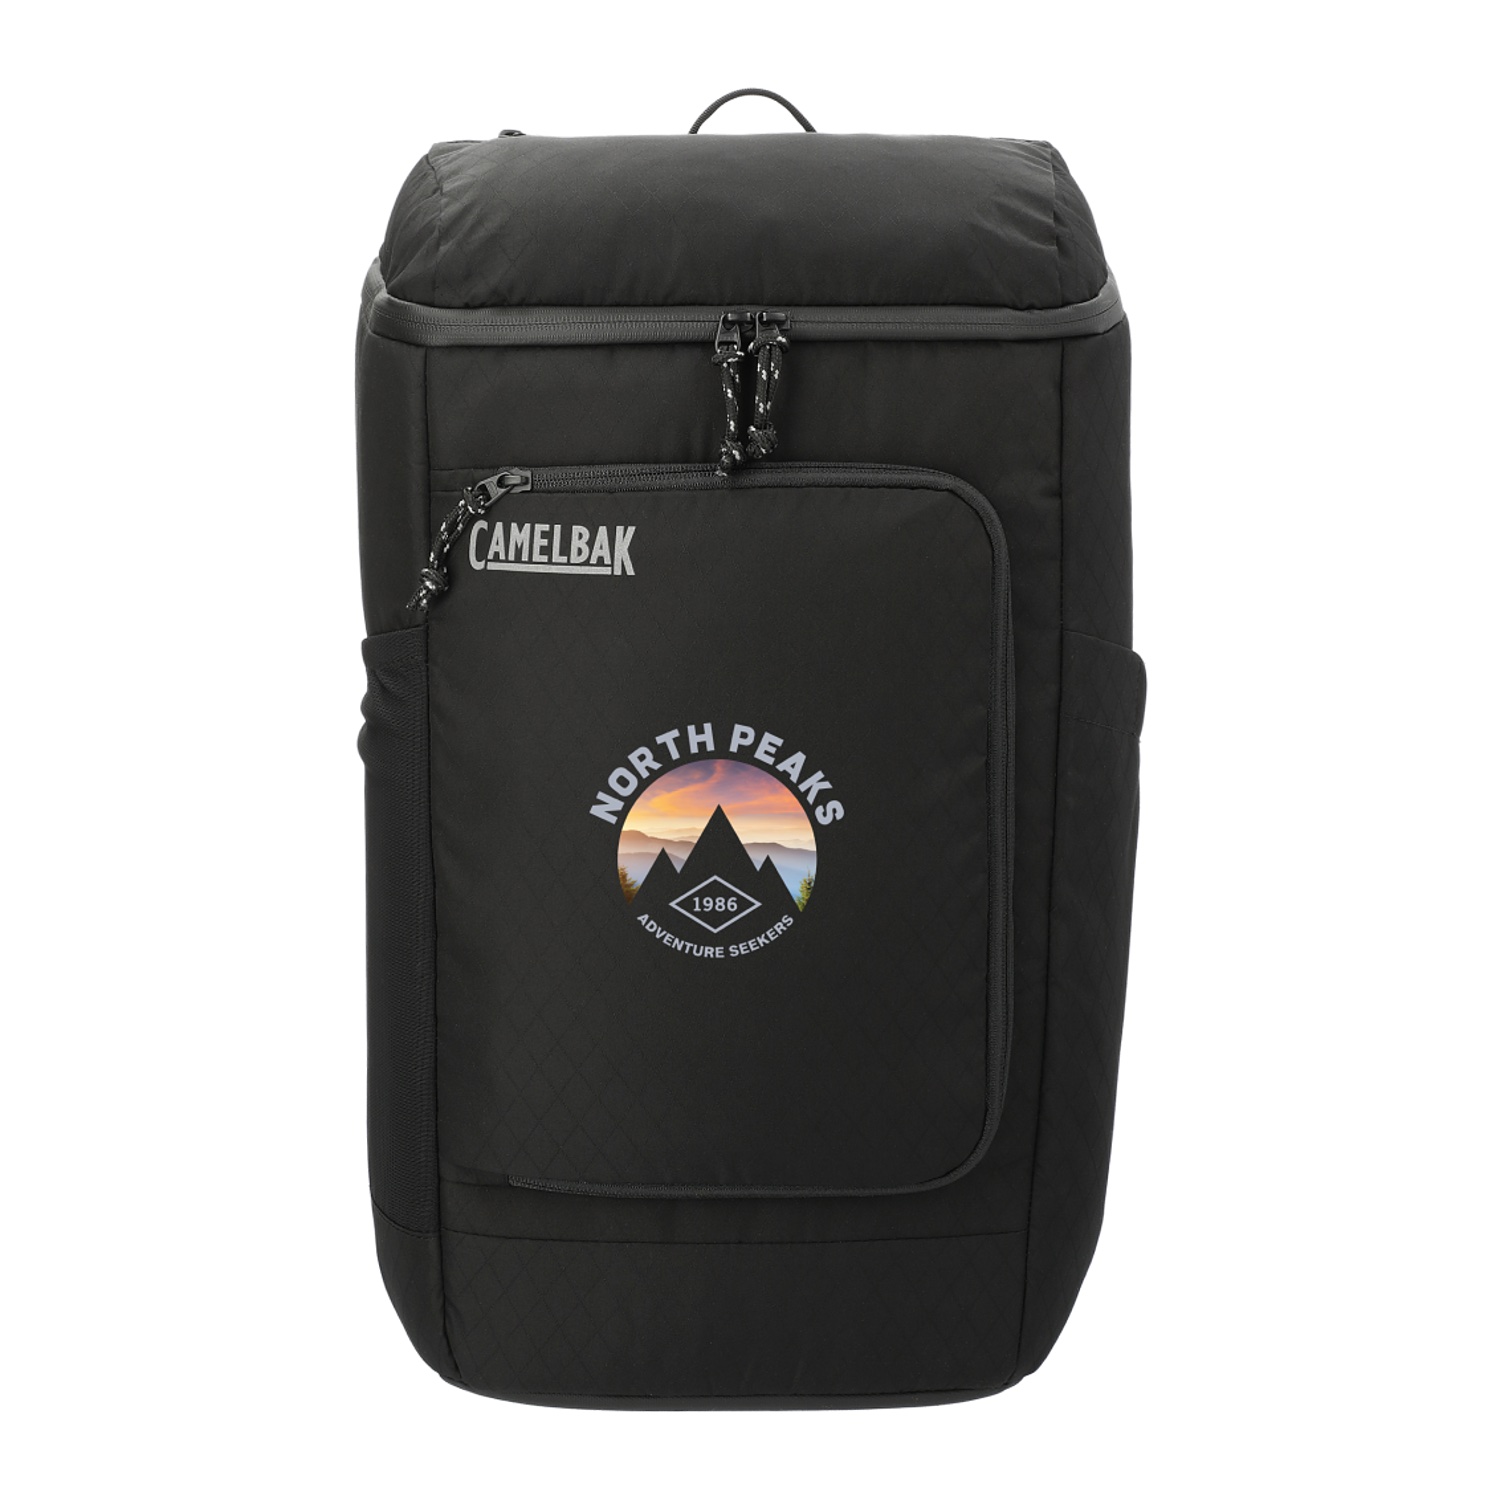 Custom Branded Camelbak Bags - Black